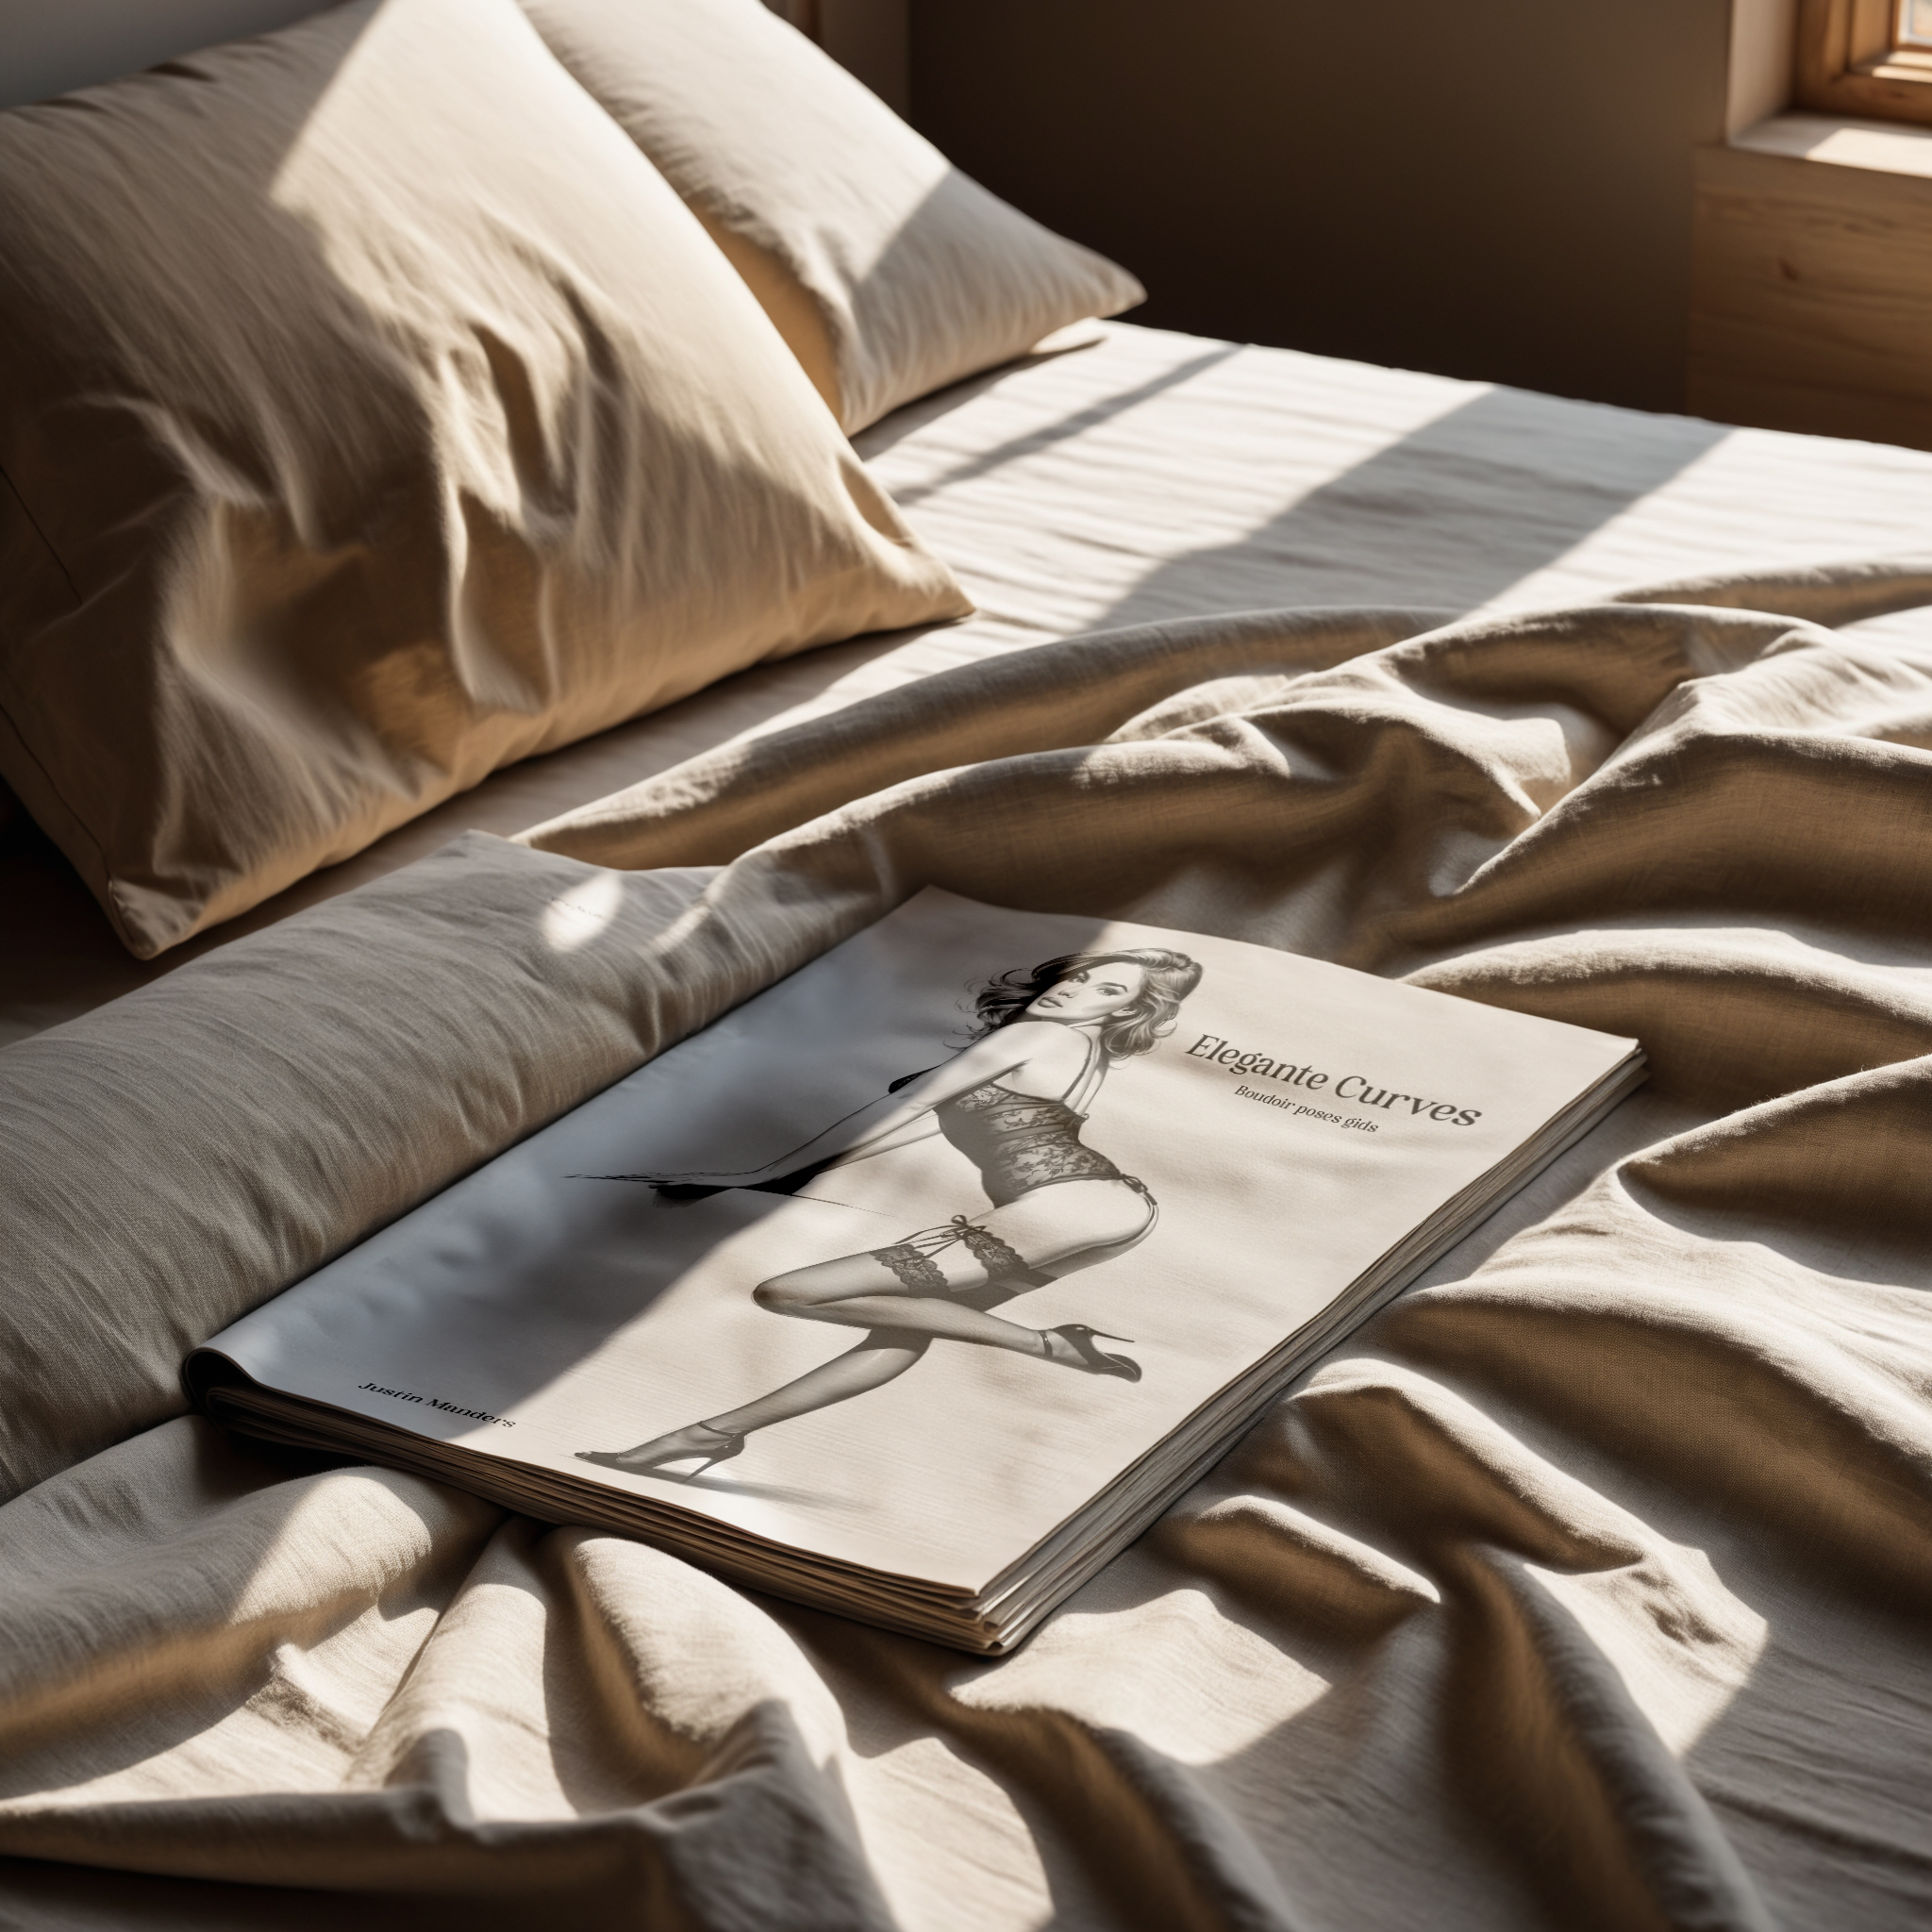 Een tijdschrift met een lingerieadvertentie ligt op een zonovergoten, onopgemaakt bed met kussens en verkreukelde lakens.